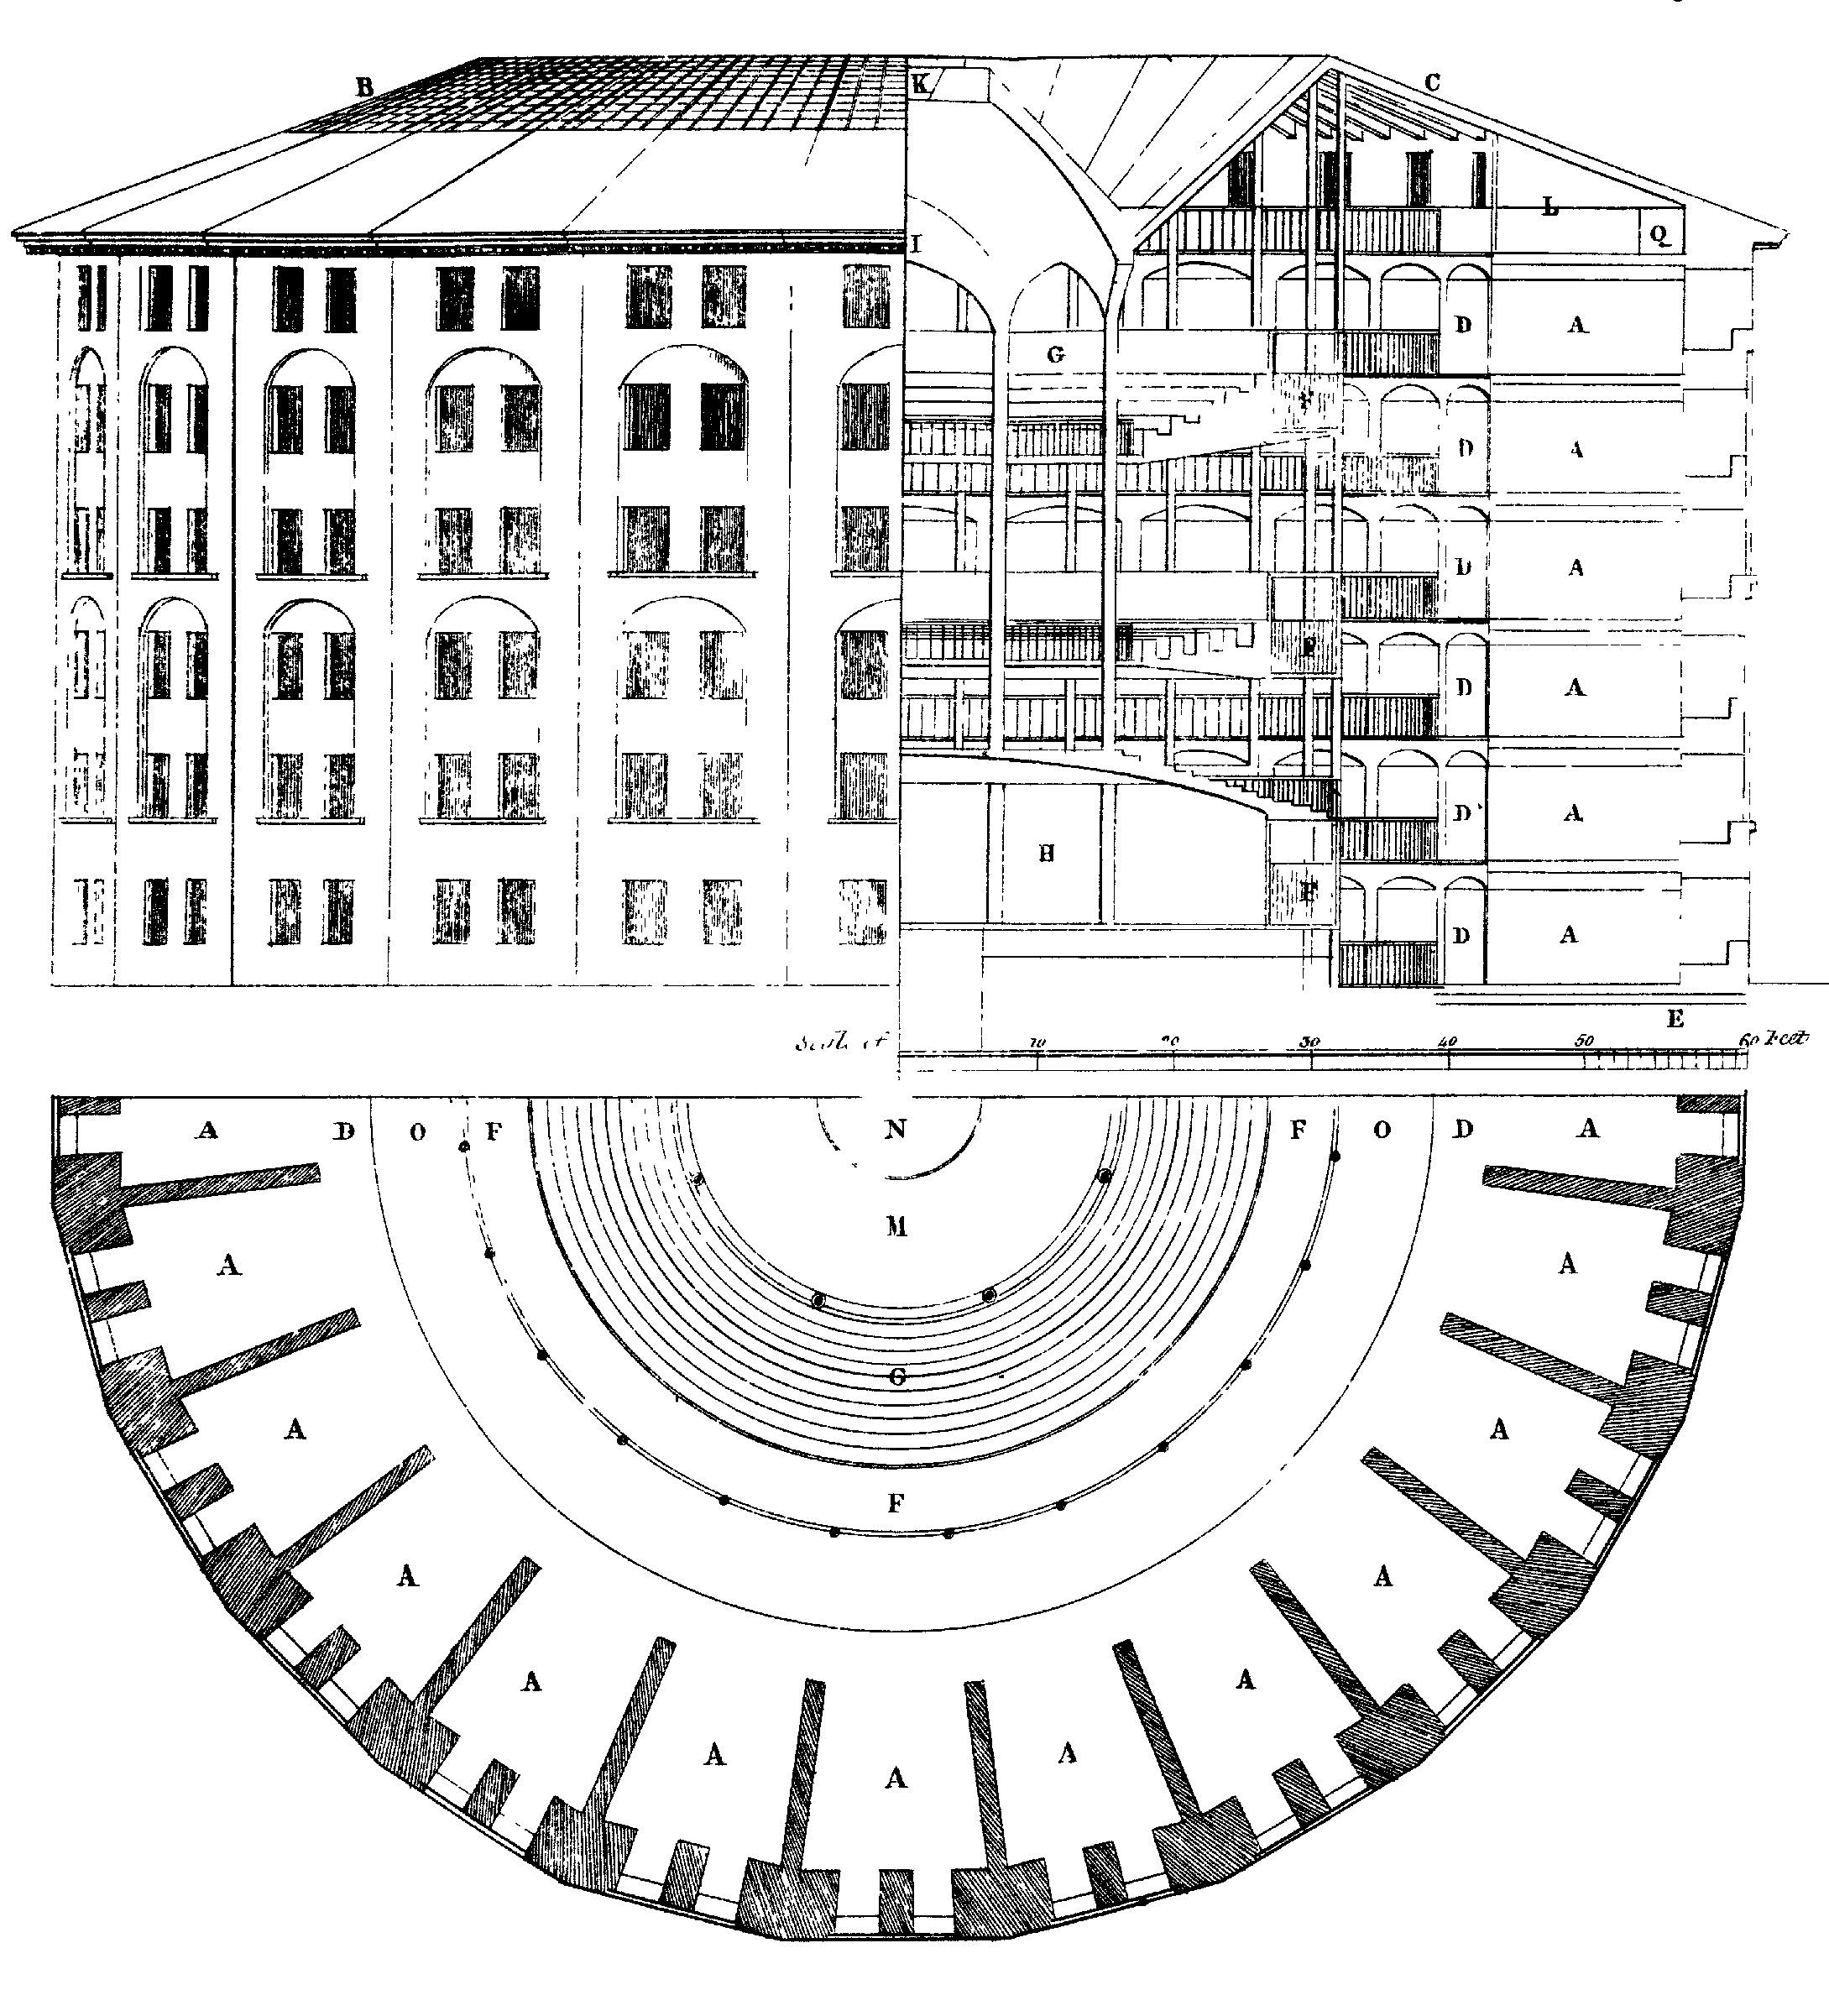 Зураг 6.3: panopticon шоронд анх Жереми Bentham санал авсан дизайн. төвд нь хүн бүрийн зан ажиглаж болох бөгөөд ажиглагдаж байж чадахгүй байгаа нь үл үзэгдэх үзмэрч байна. Willey Reveley өөр зураг, 1791. Эх сурвалж: Wikimedia Commons.